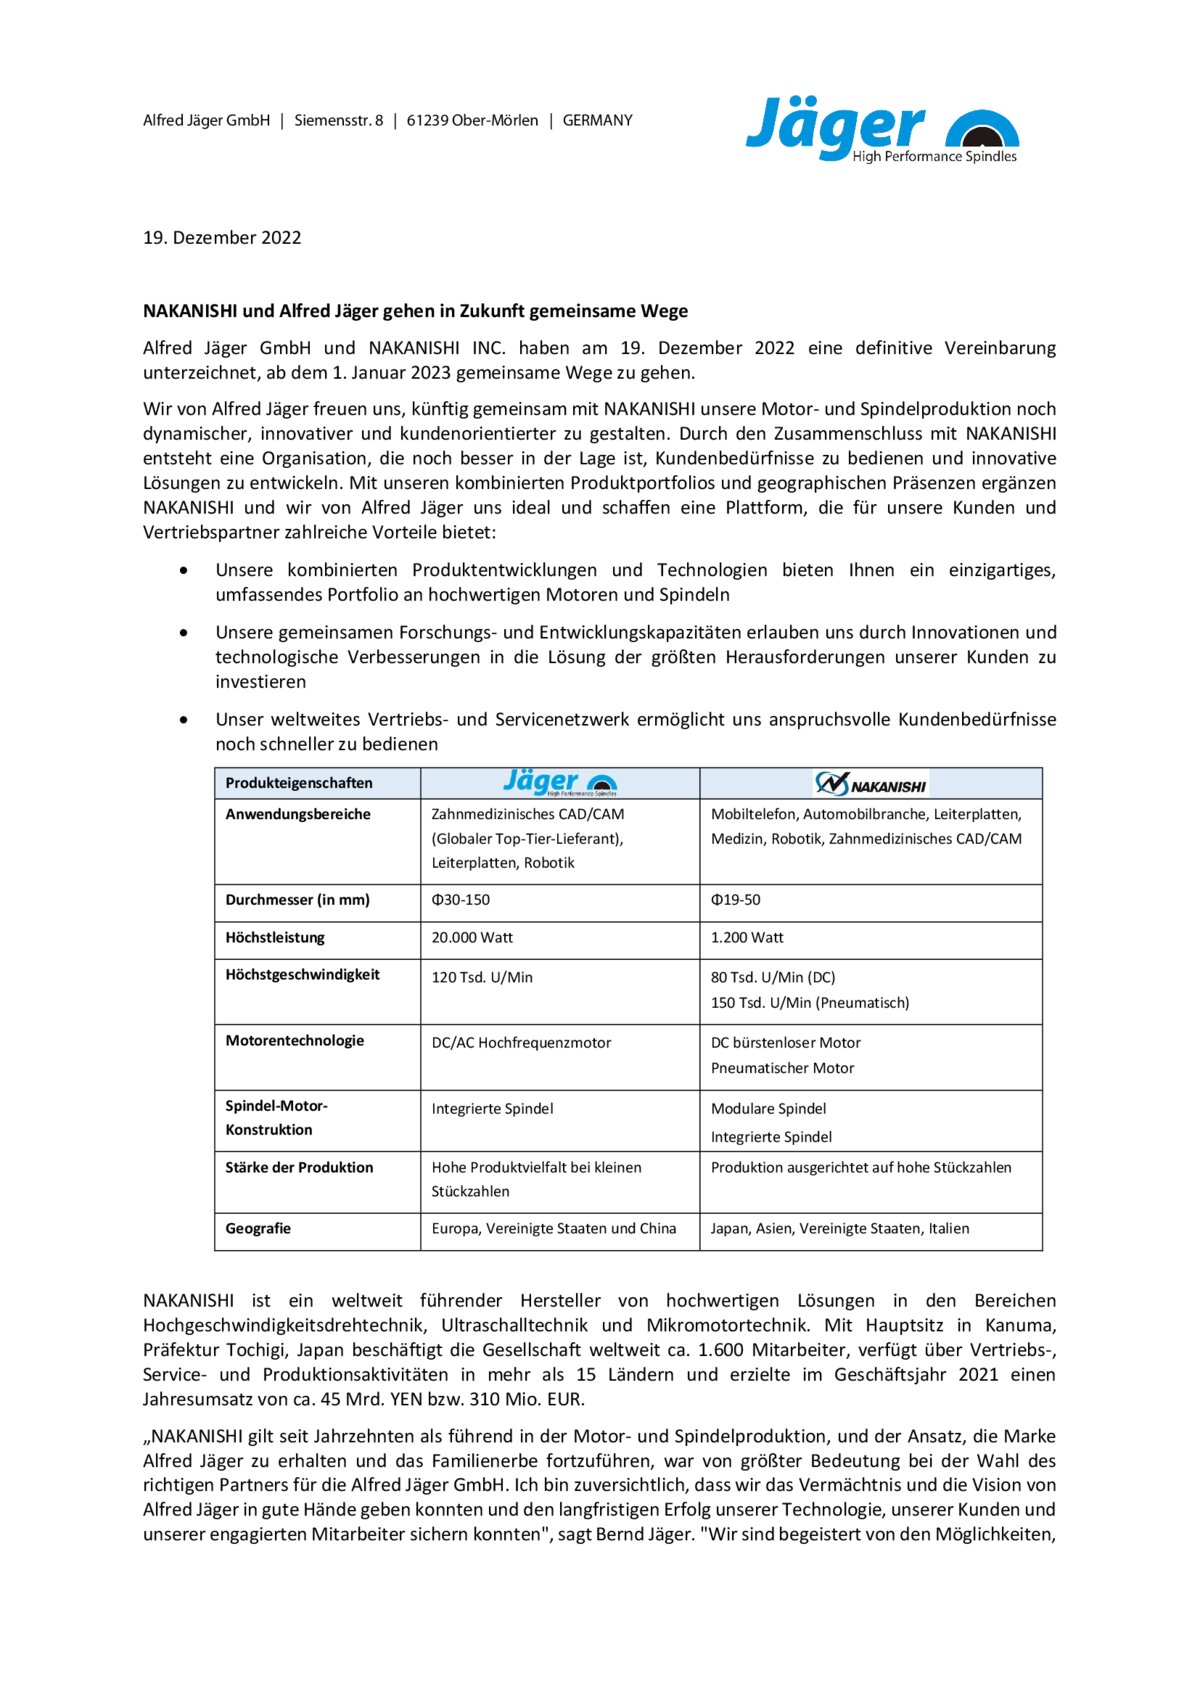 Wichtige Kunden und Lieferanteninformation.pdf - Page 1/2 